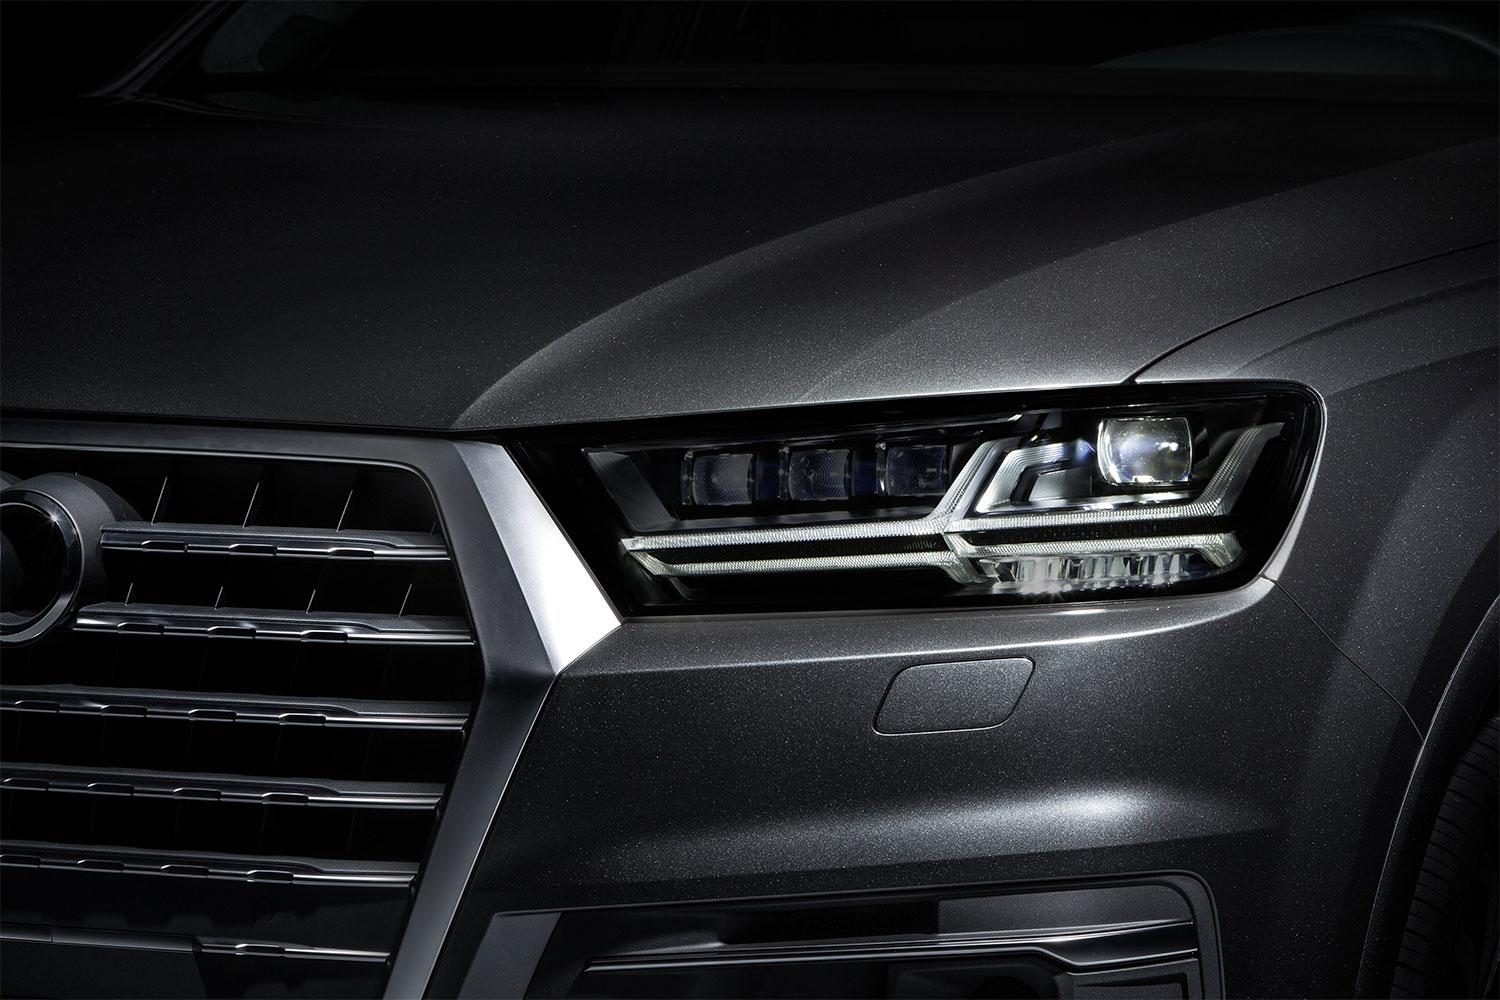 2016 Audi Q7 headlight